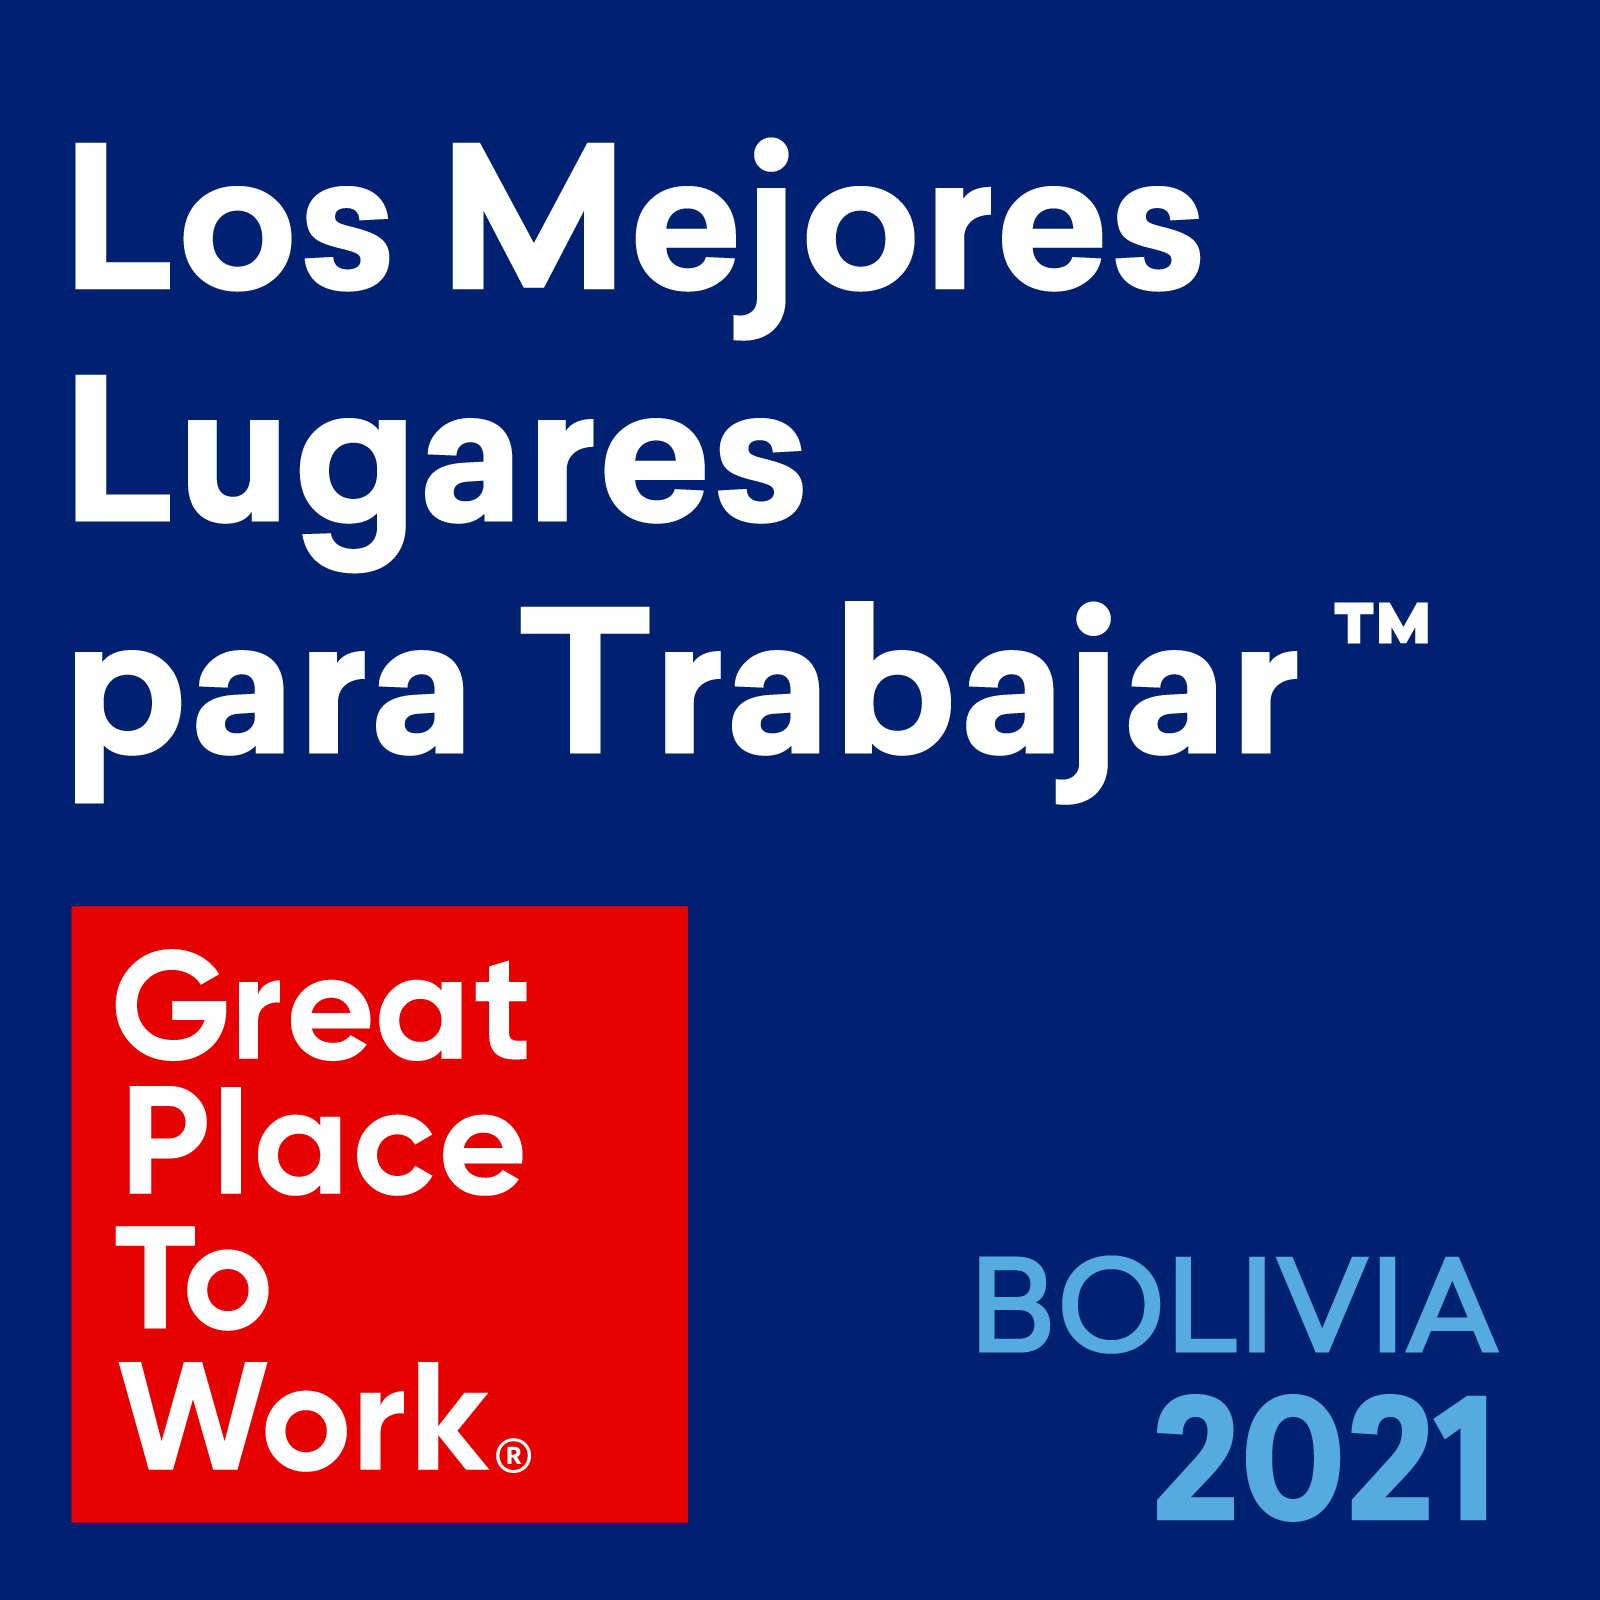 2021_BOLIVIA_Los_Mejores_Lugares_para_Trabajar2x_1